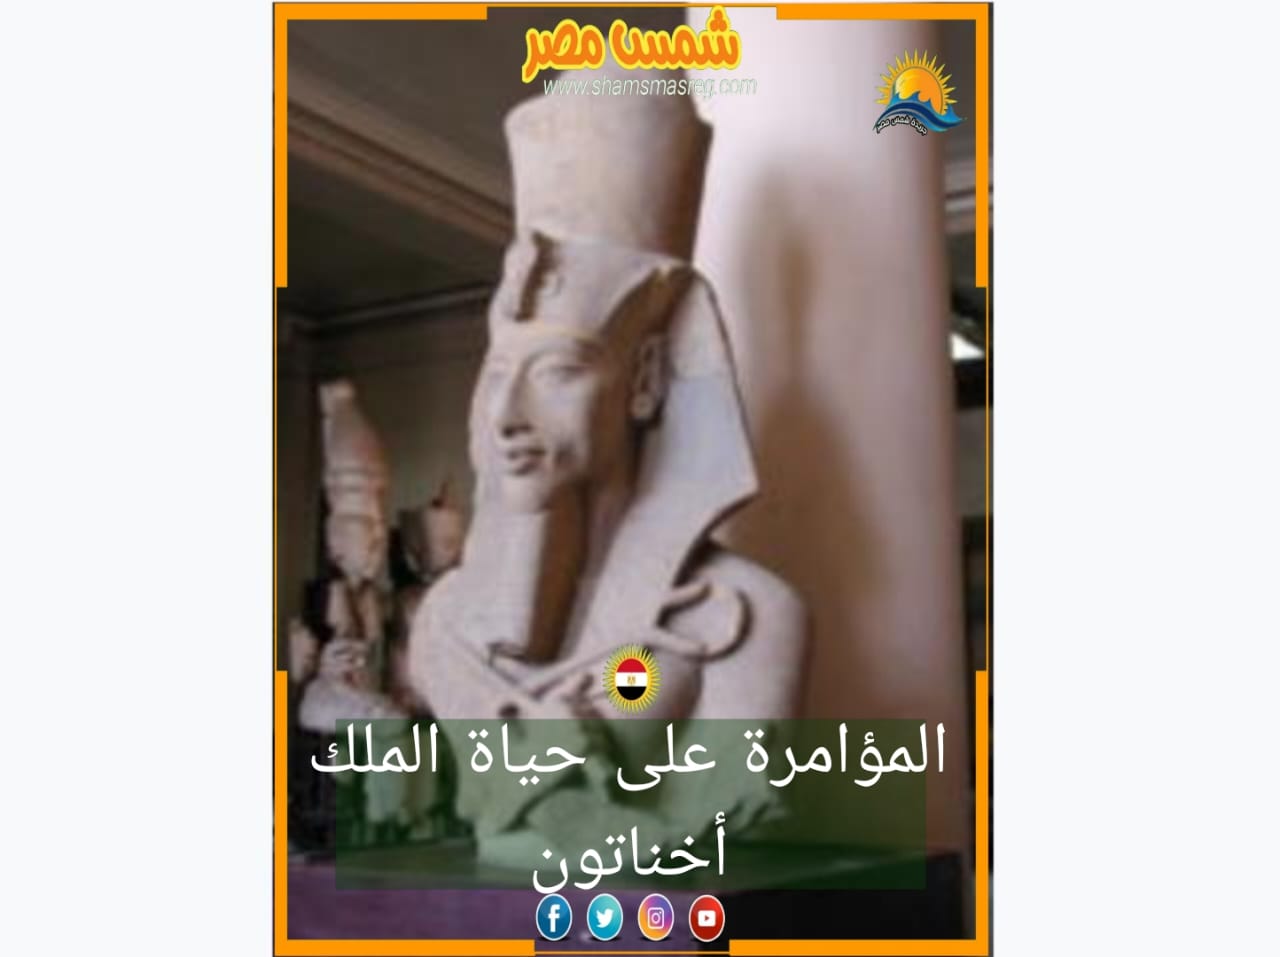 شمس مصر/ المؤامرة على حياة الملك اخناتون